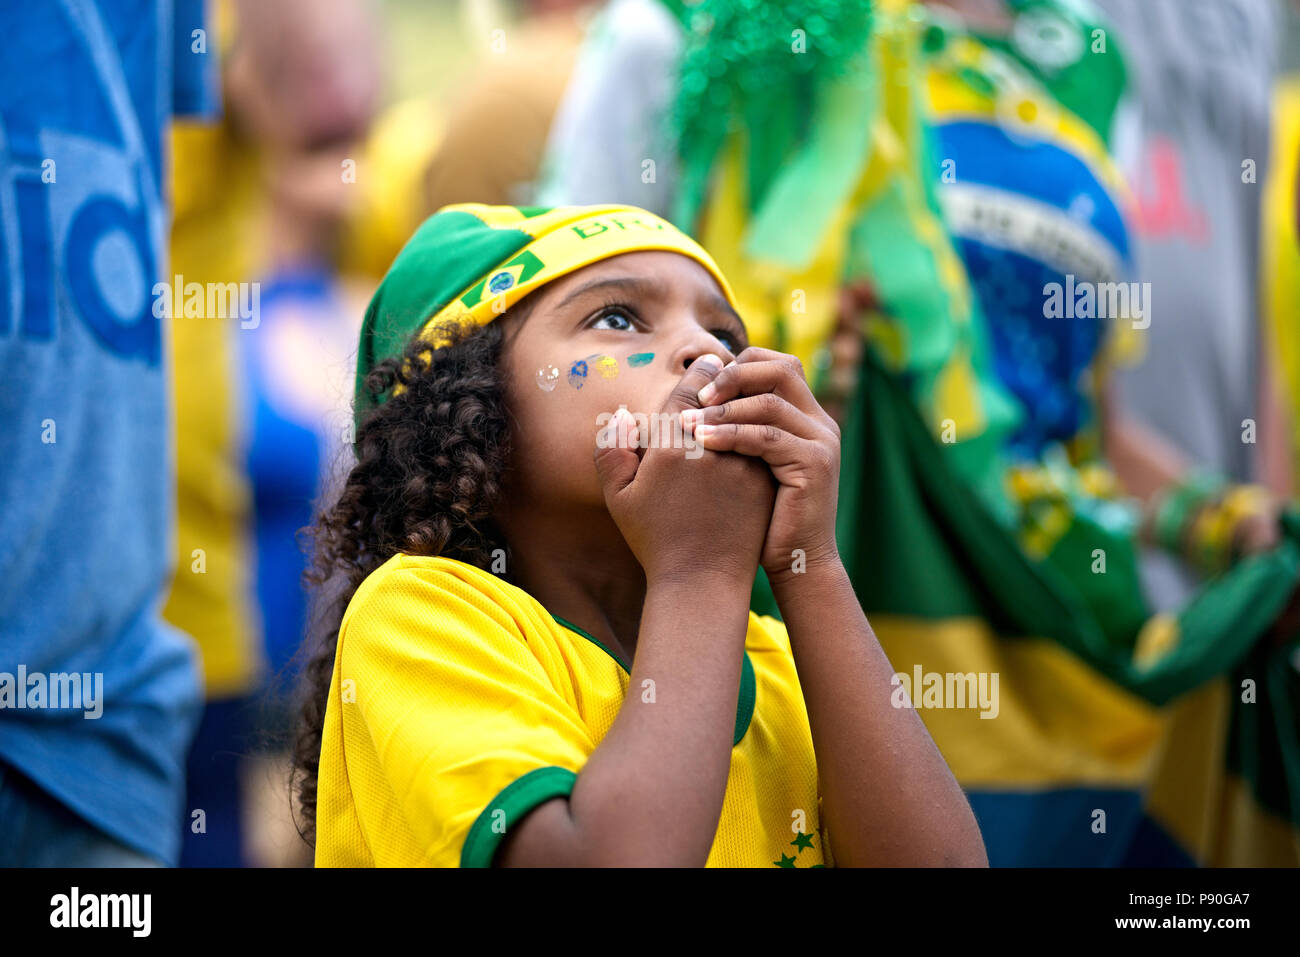 Brasile - Giugno 27, 2018: preoccupato per il giovane brasiliano orologi ventola una ripresa televisiva del match tra il Brasile e la Serbia nel centro di Rio de Janeiro Foto Stock